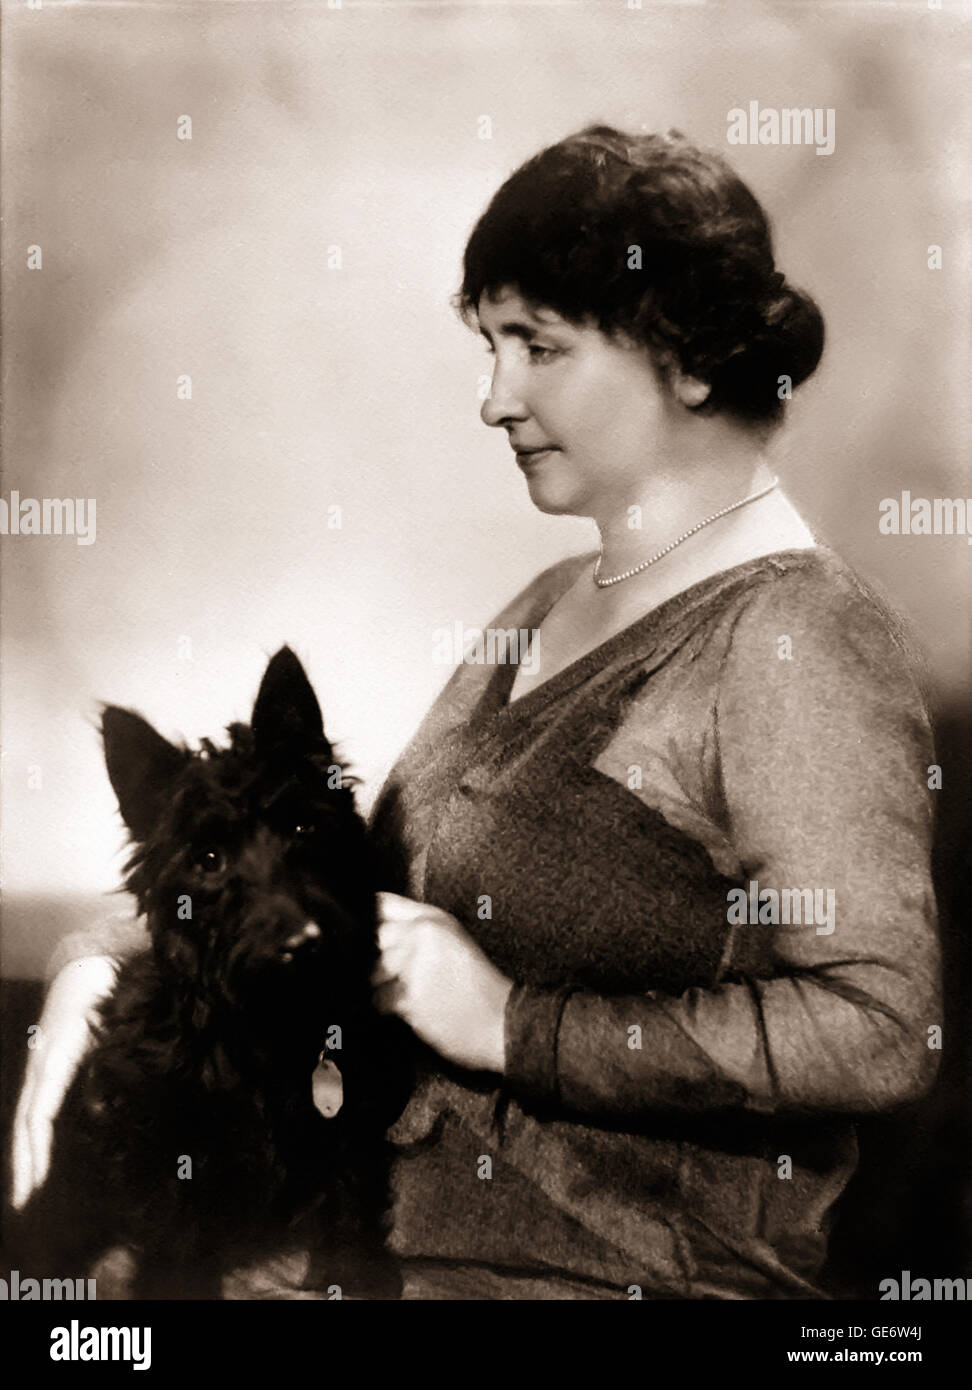 US-amerikanische taub und blind Autorin Helen Keller (1880-1968) und mit ihr Scottish Terrier namens Darkie. Siehe Beschreibung für mehr Informationen. Stockfoto